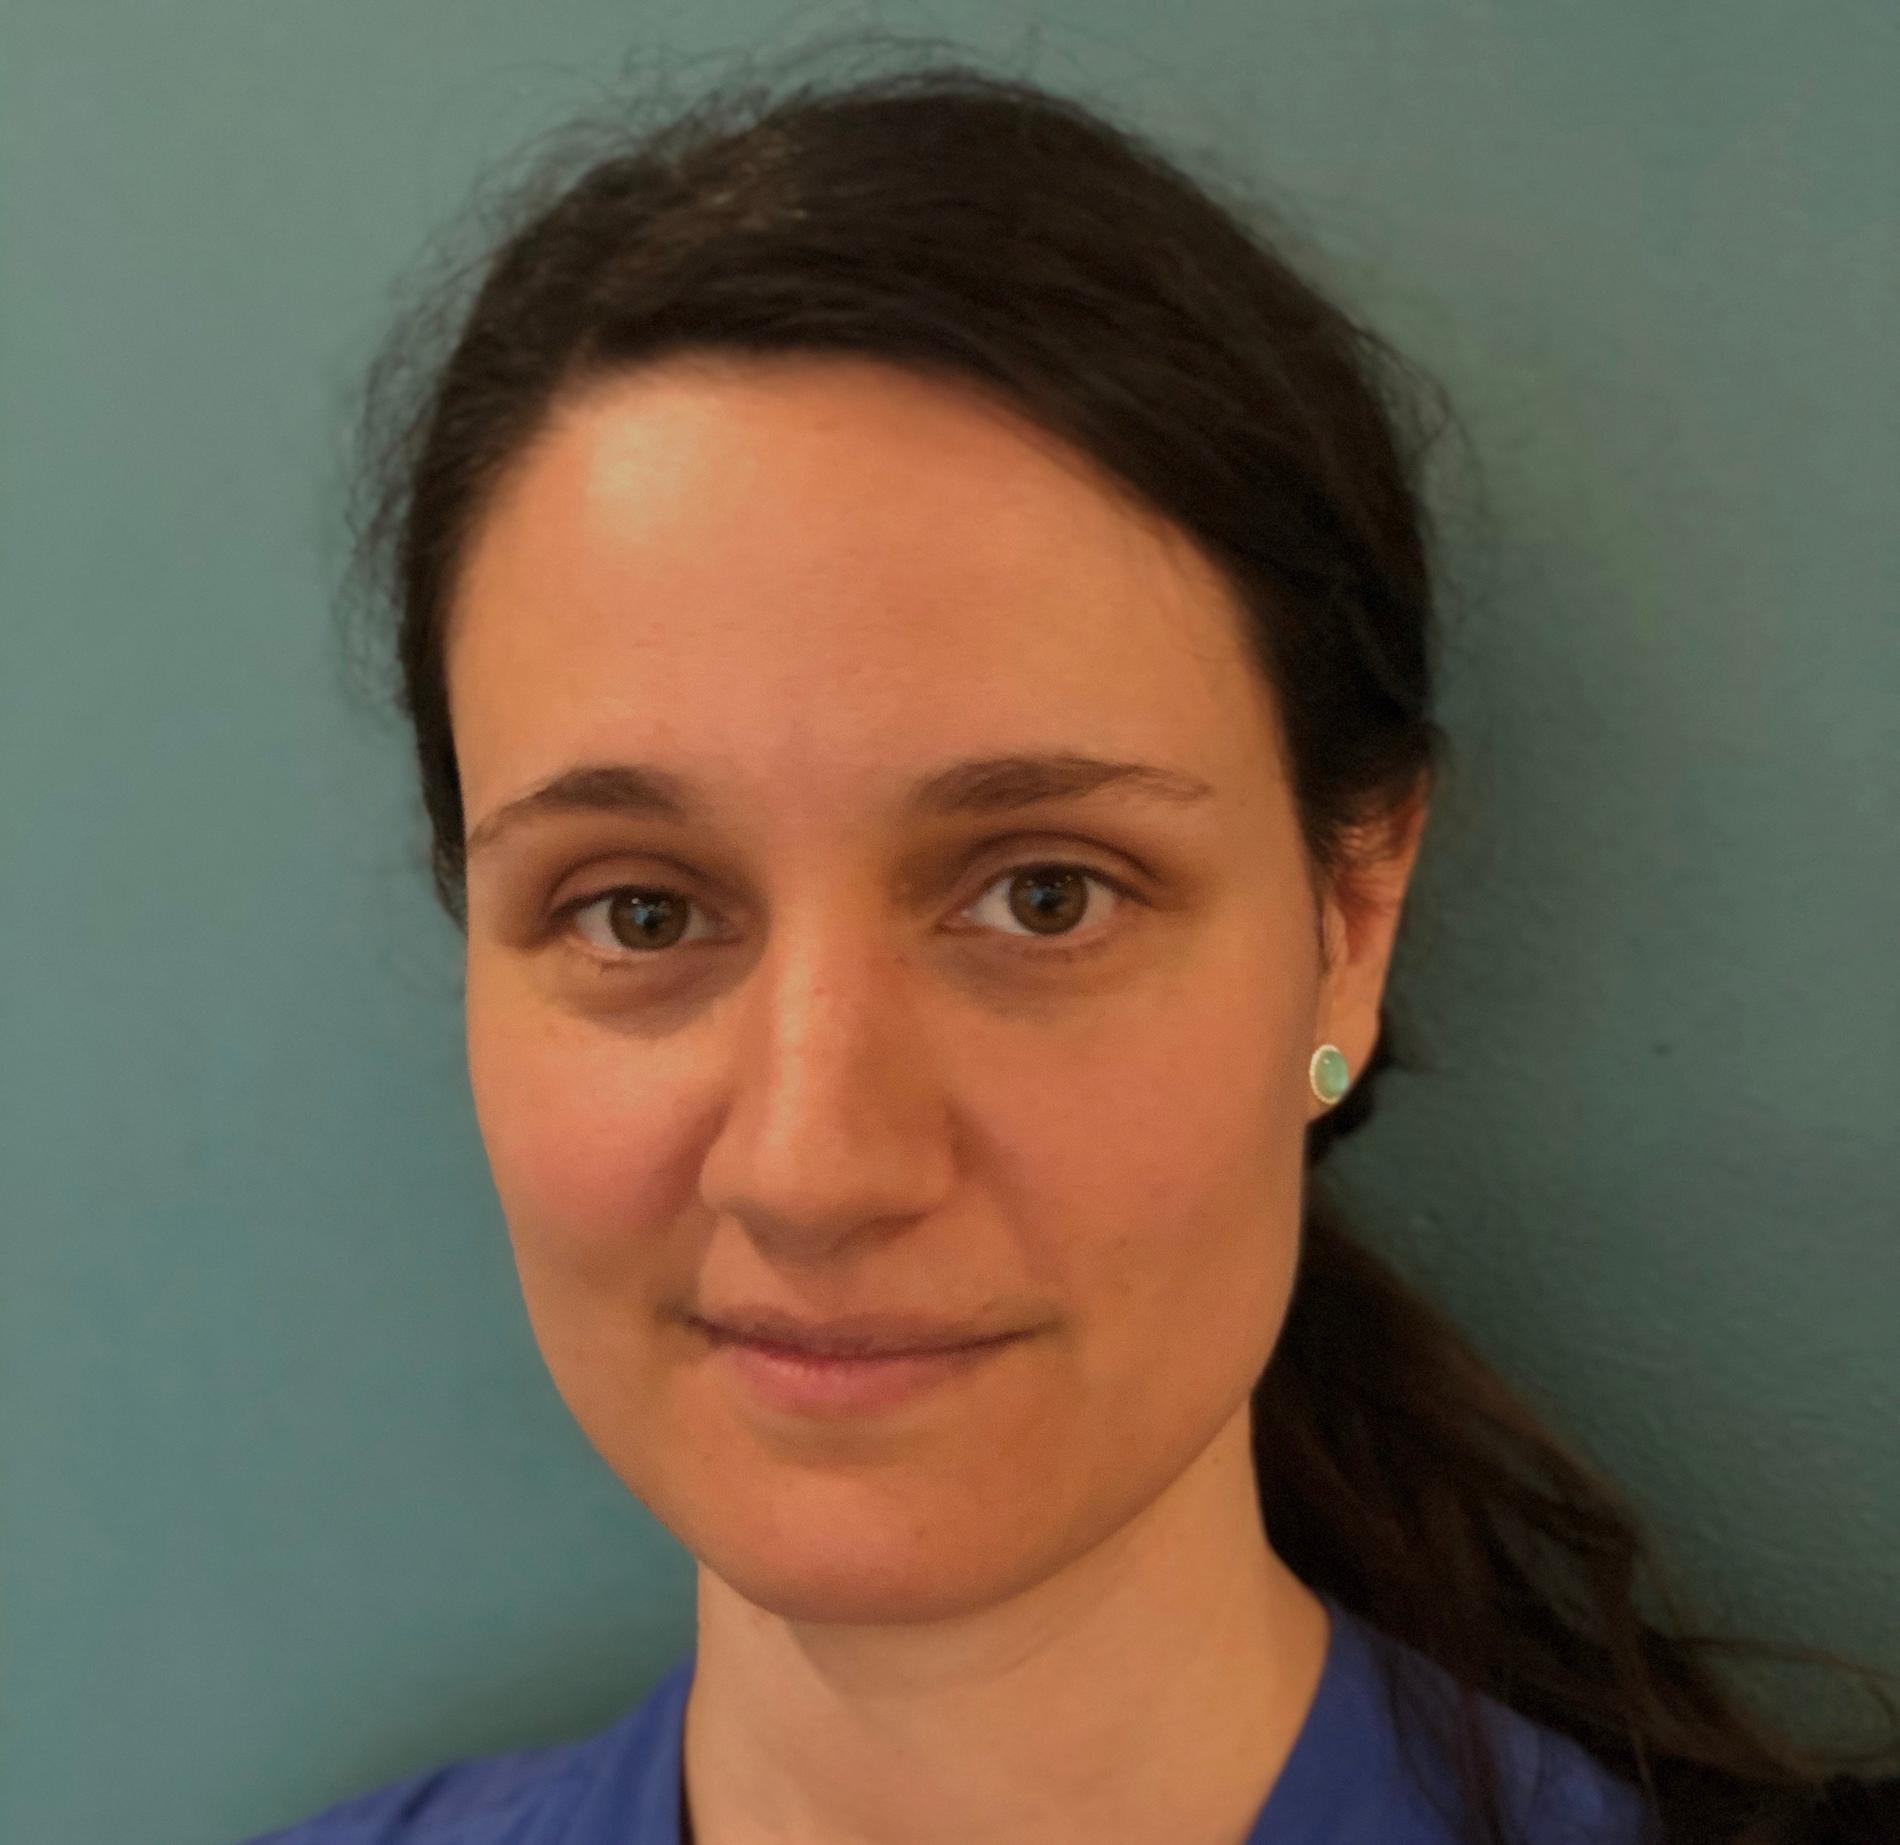 Verena Sengpiel, överläkare på förlossningen på Sahlgrenska universitetssjukhuset och docent i obstetrik och gynekologi vid Göteborgs universitet.